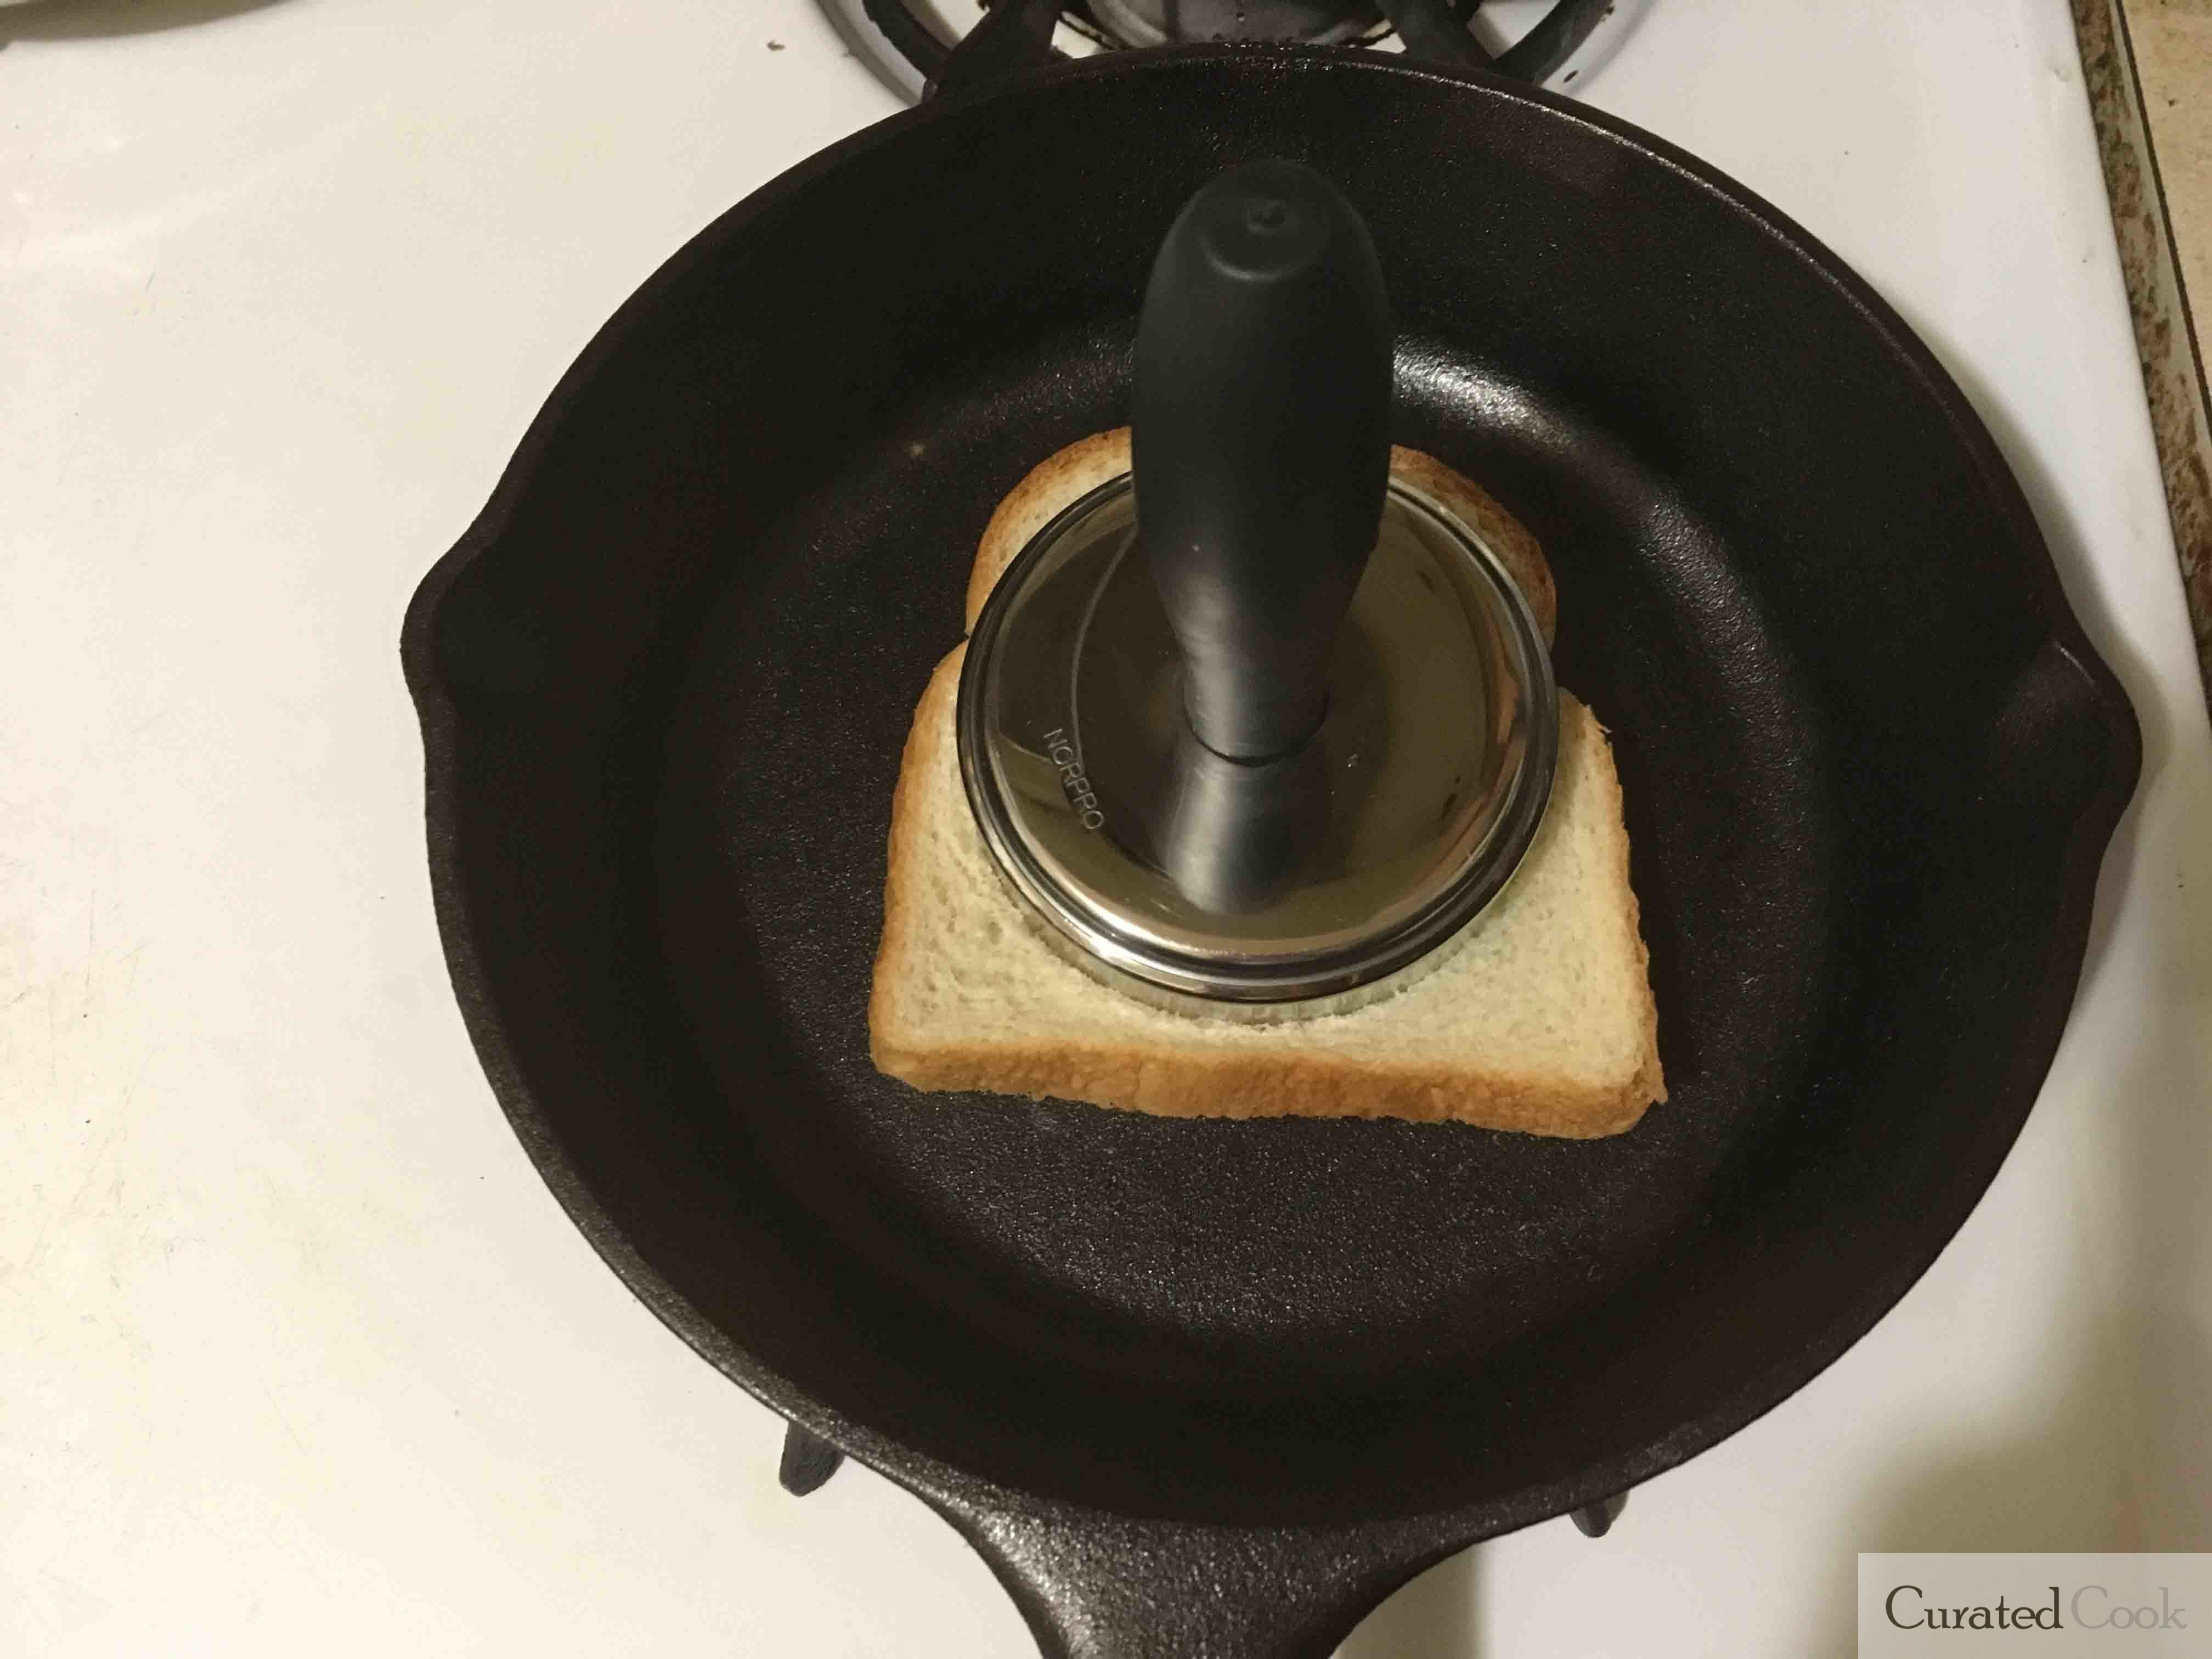 Lodge Skillet Toast Test